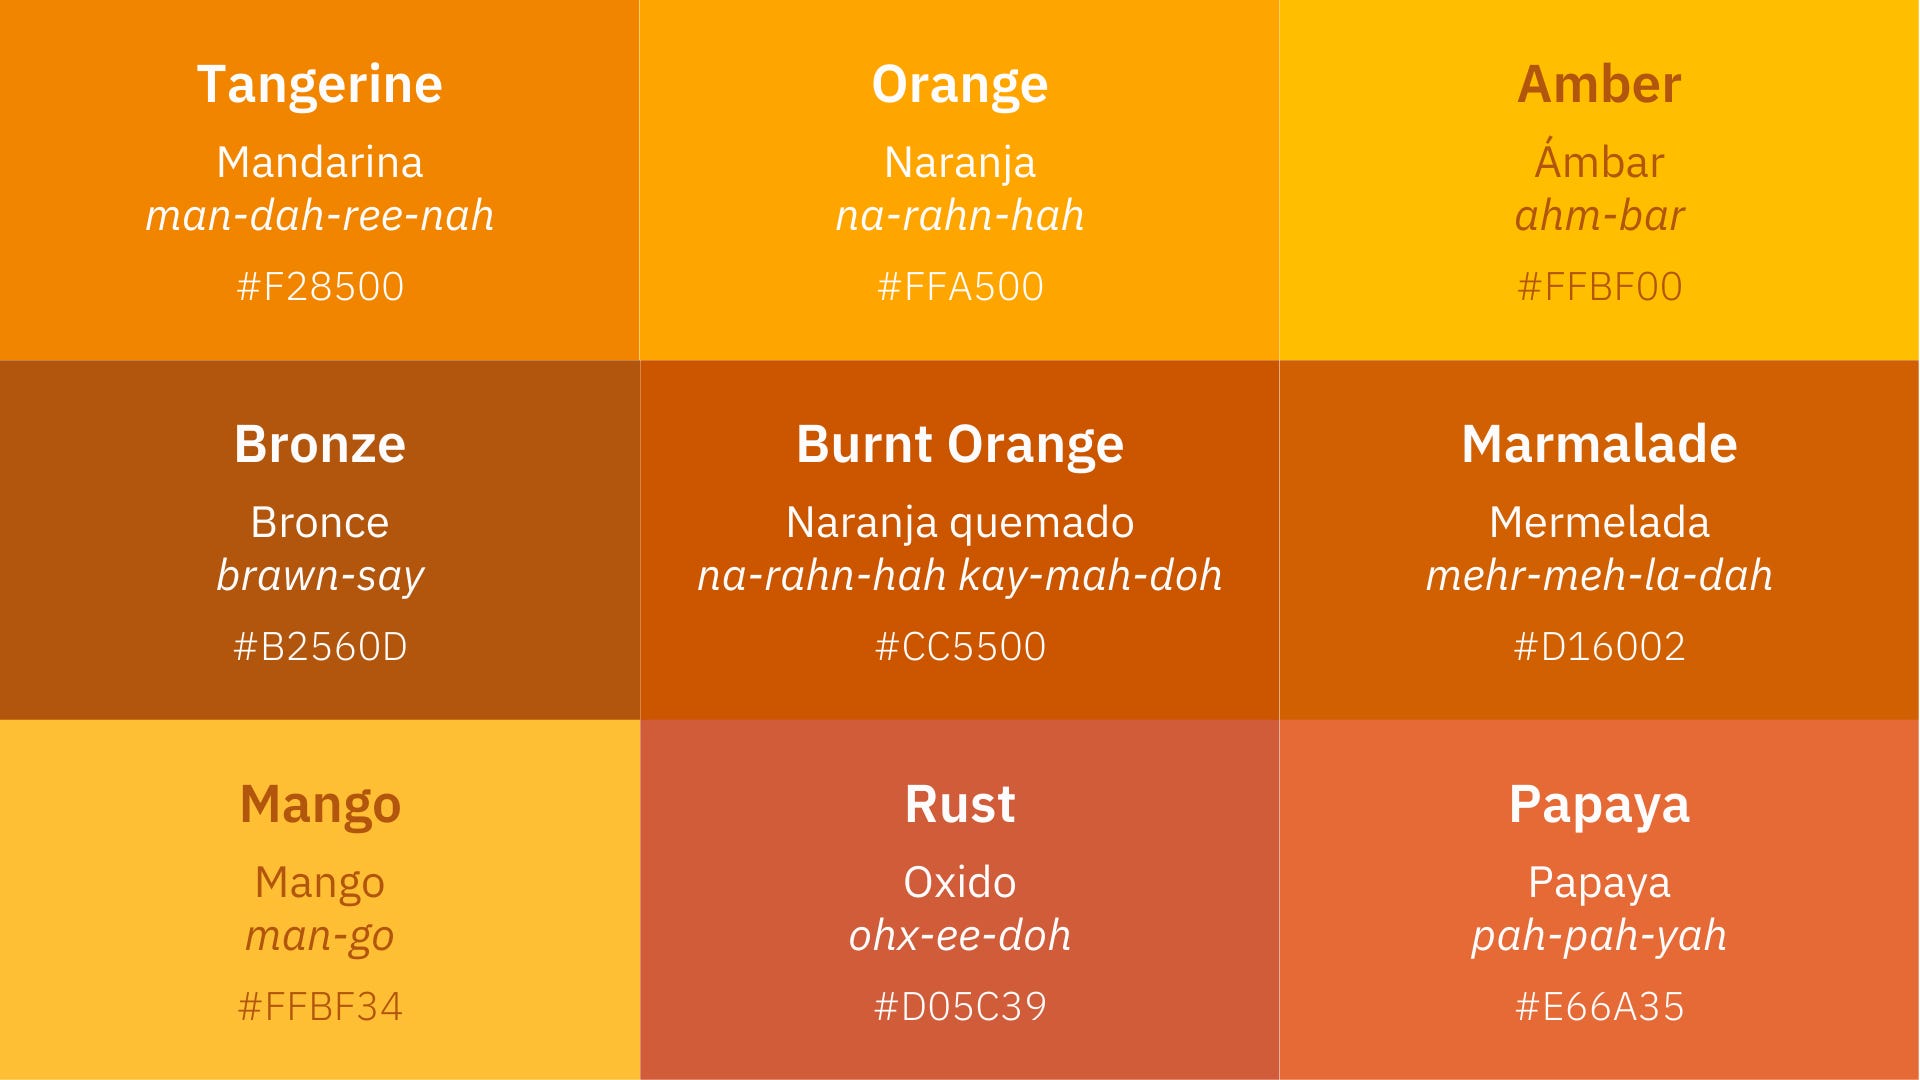 Orange in Spanish.